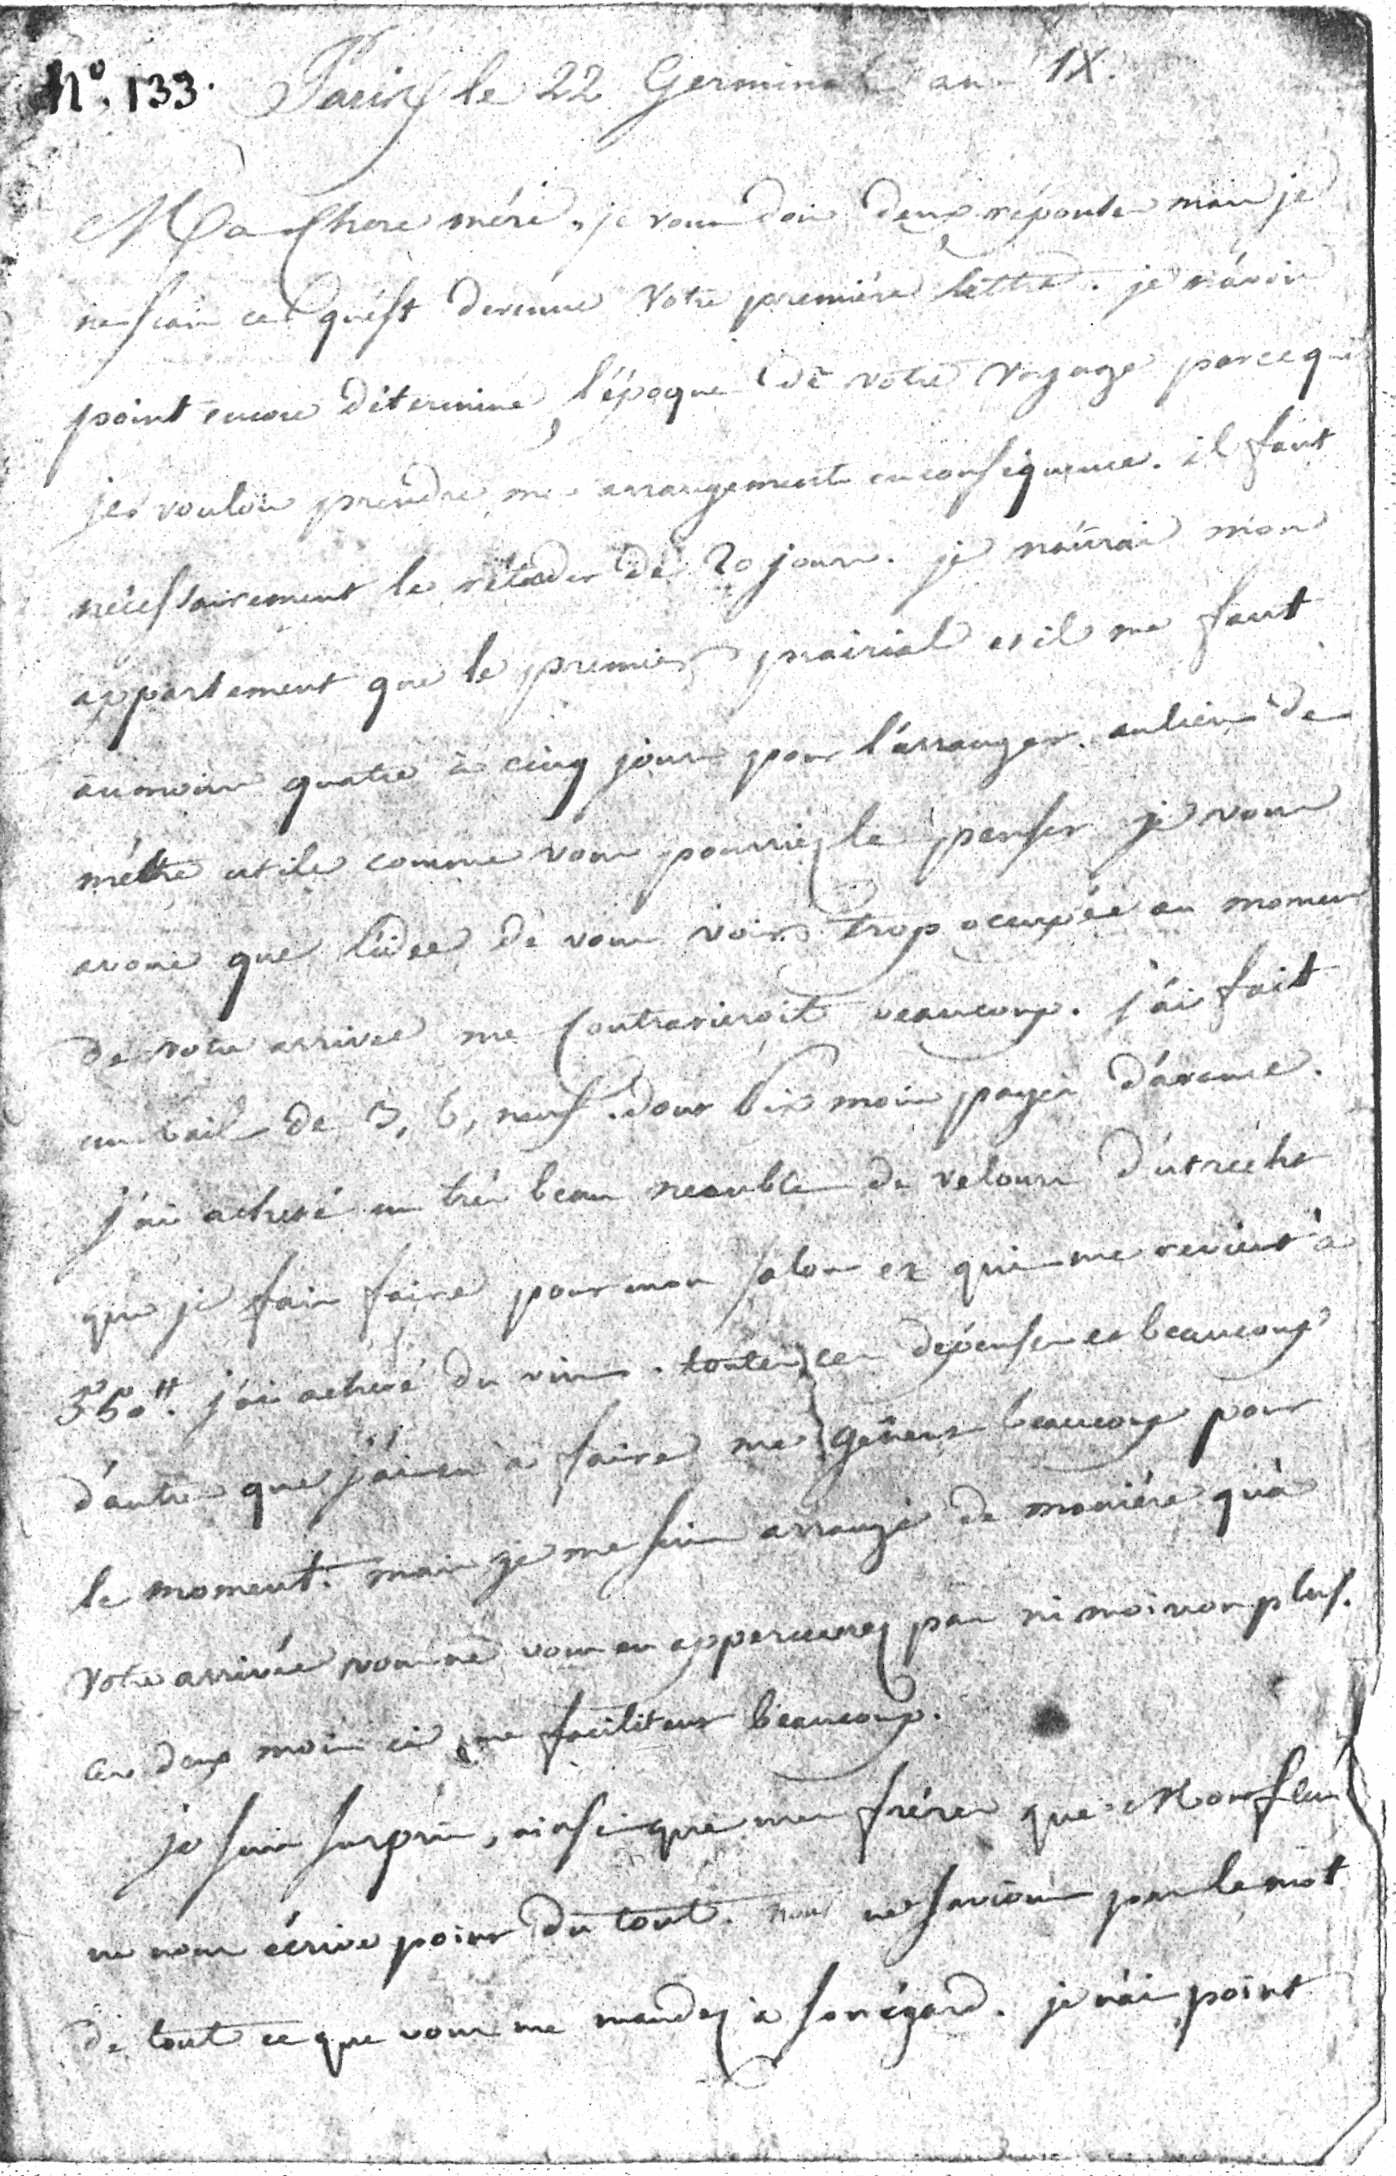 Dimanche 12 avril 1801, 22 germinal an IX